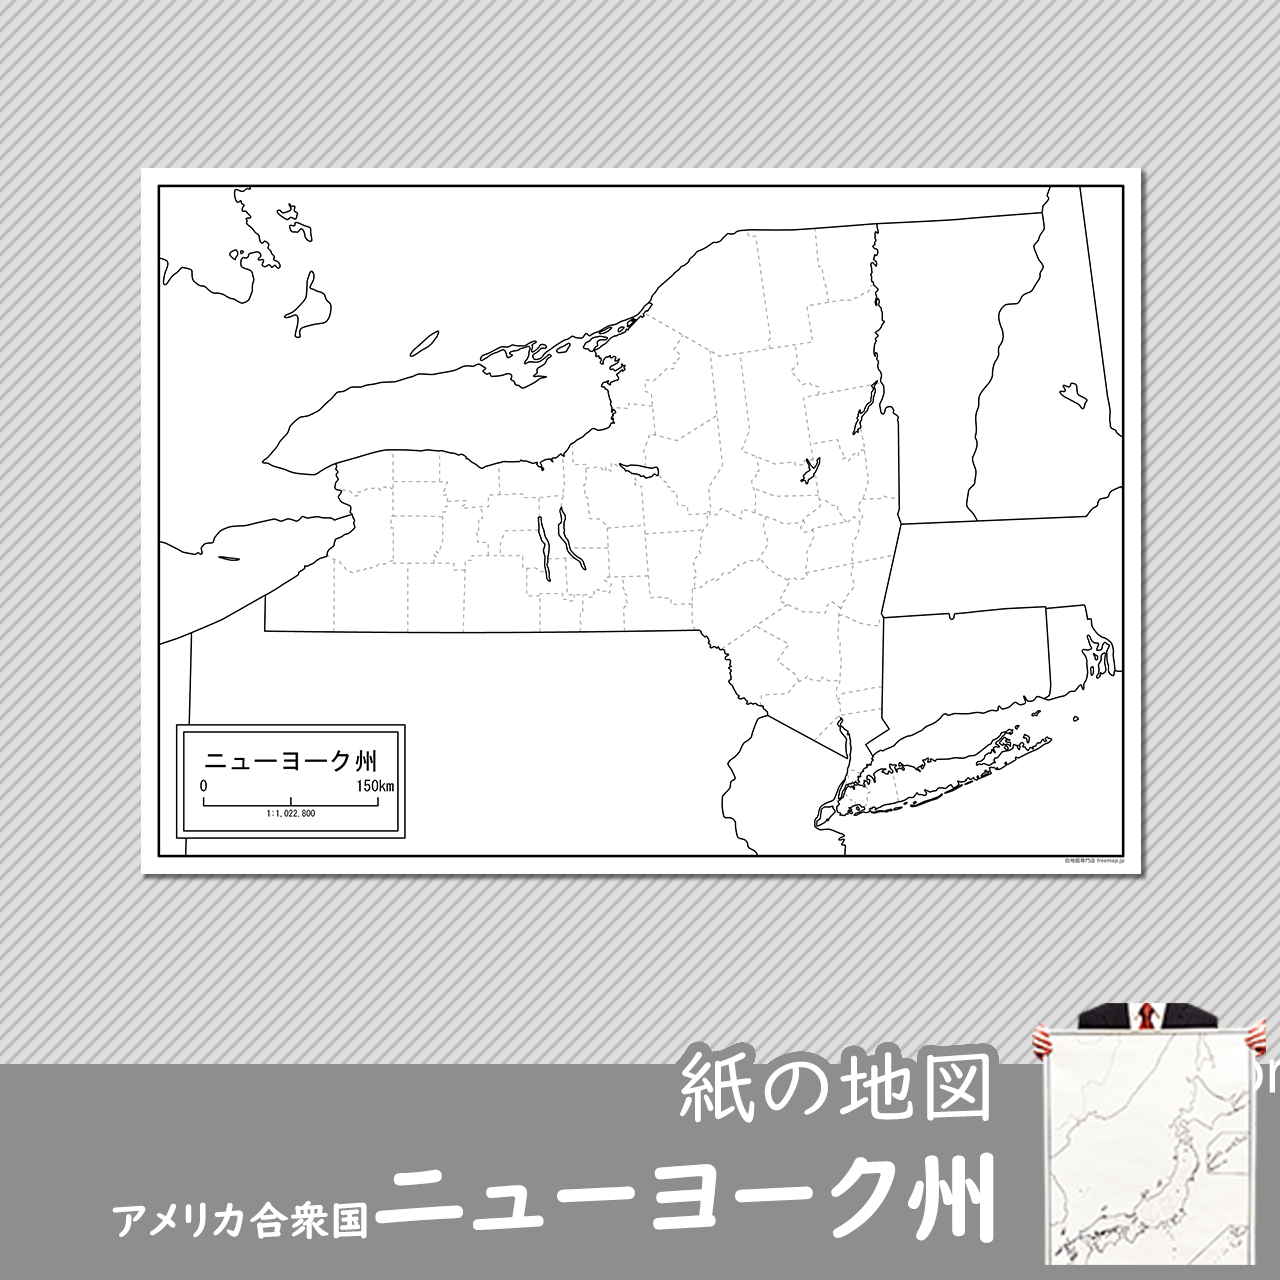 ニューヨーク州の紙の白地図のサムネイル